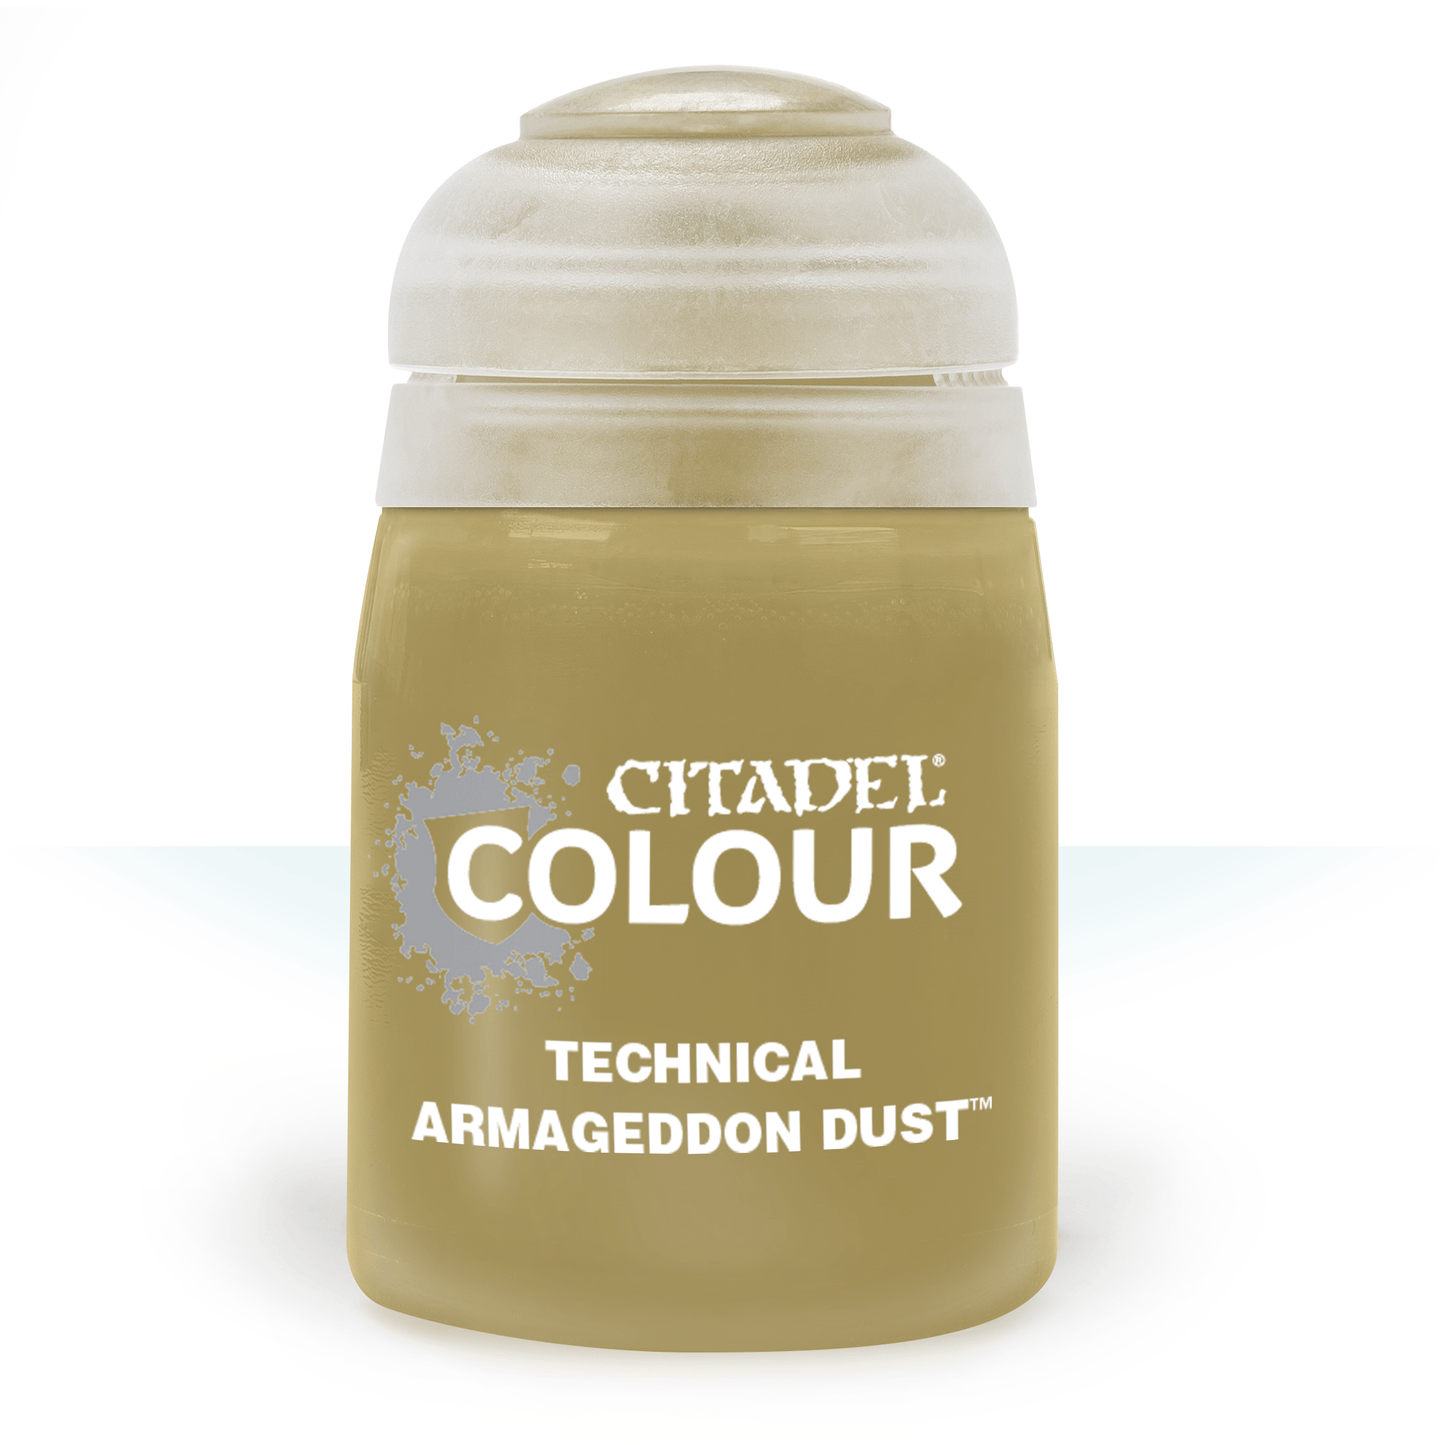 Citadel Colour - Armageddon Dust Technical Paint